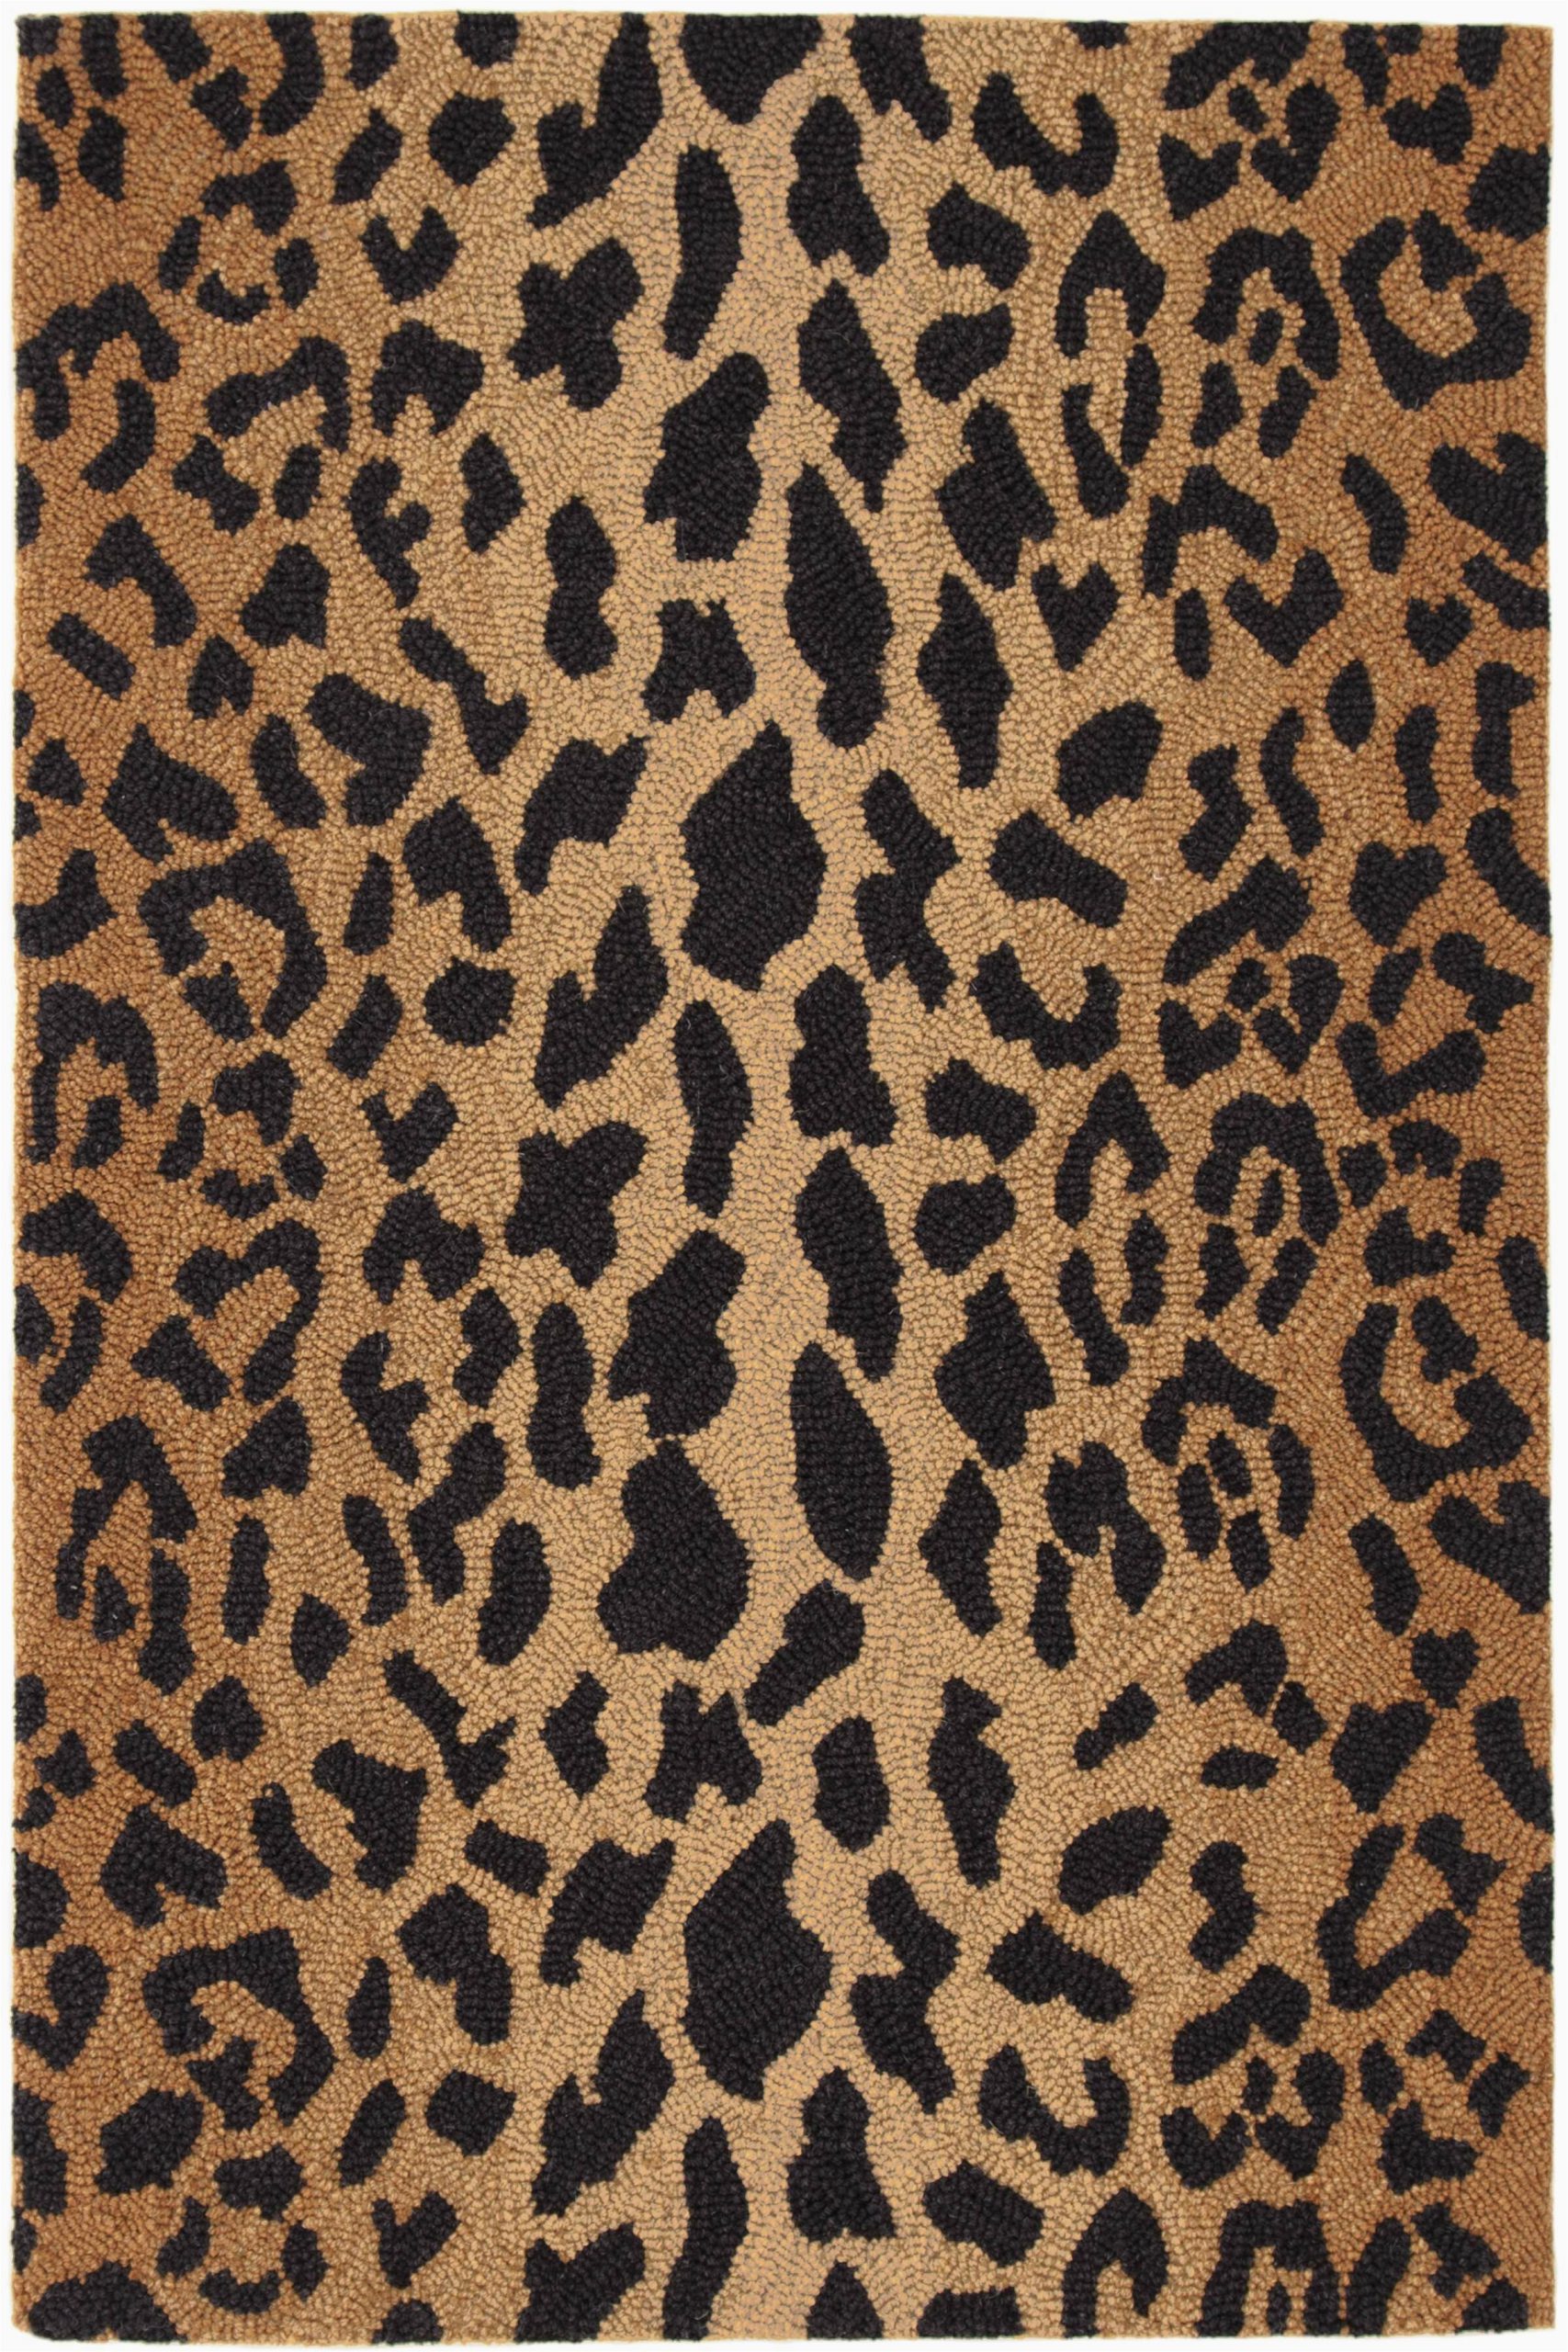 Leopard Print Bathroom Rugs Leopard Animal Print Hand Hooked Wool Brown Black area Rug